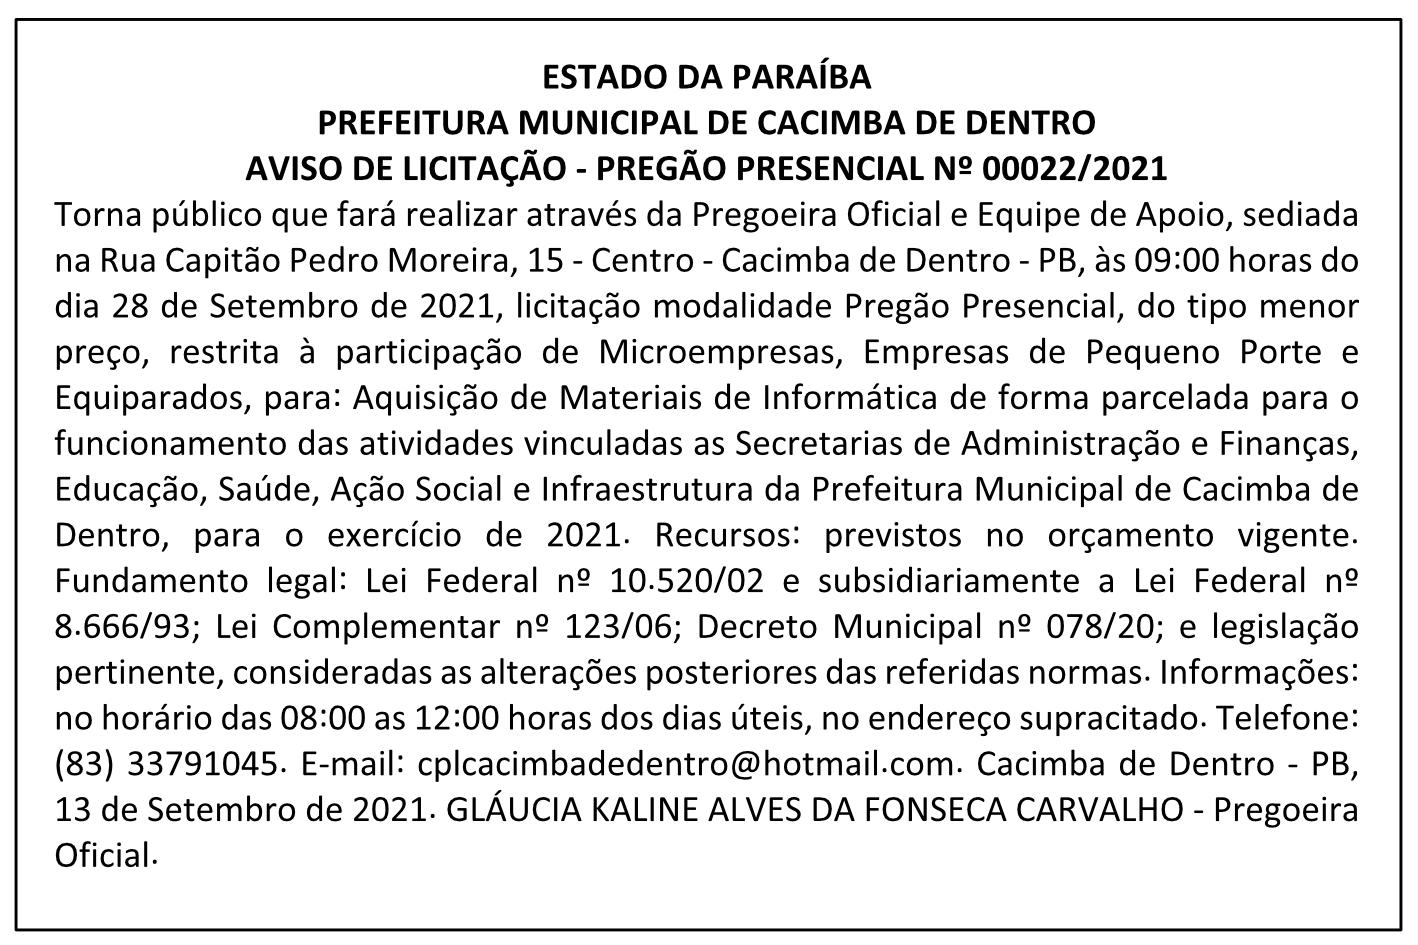 PREFEITURA MUNICIPAL DE CACIMBA DE DENTRO – AVISO DE LICITAÇÃO – PREGÃO PRESENCIAL Nº 00022/2021